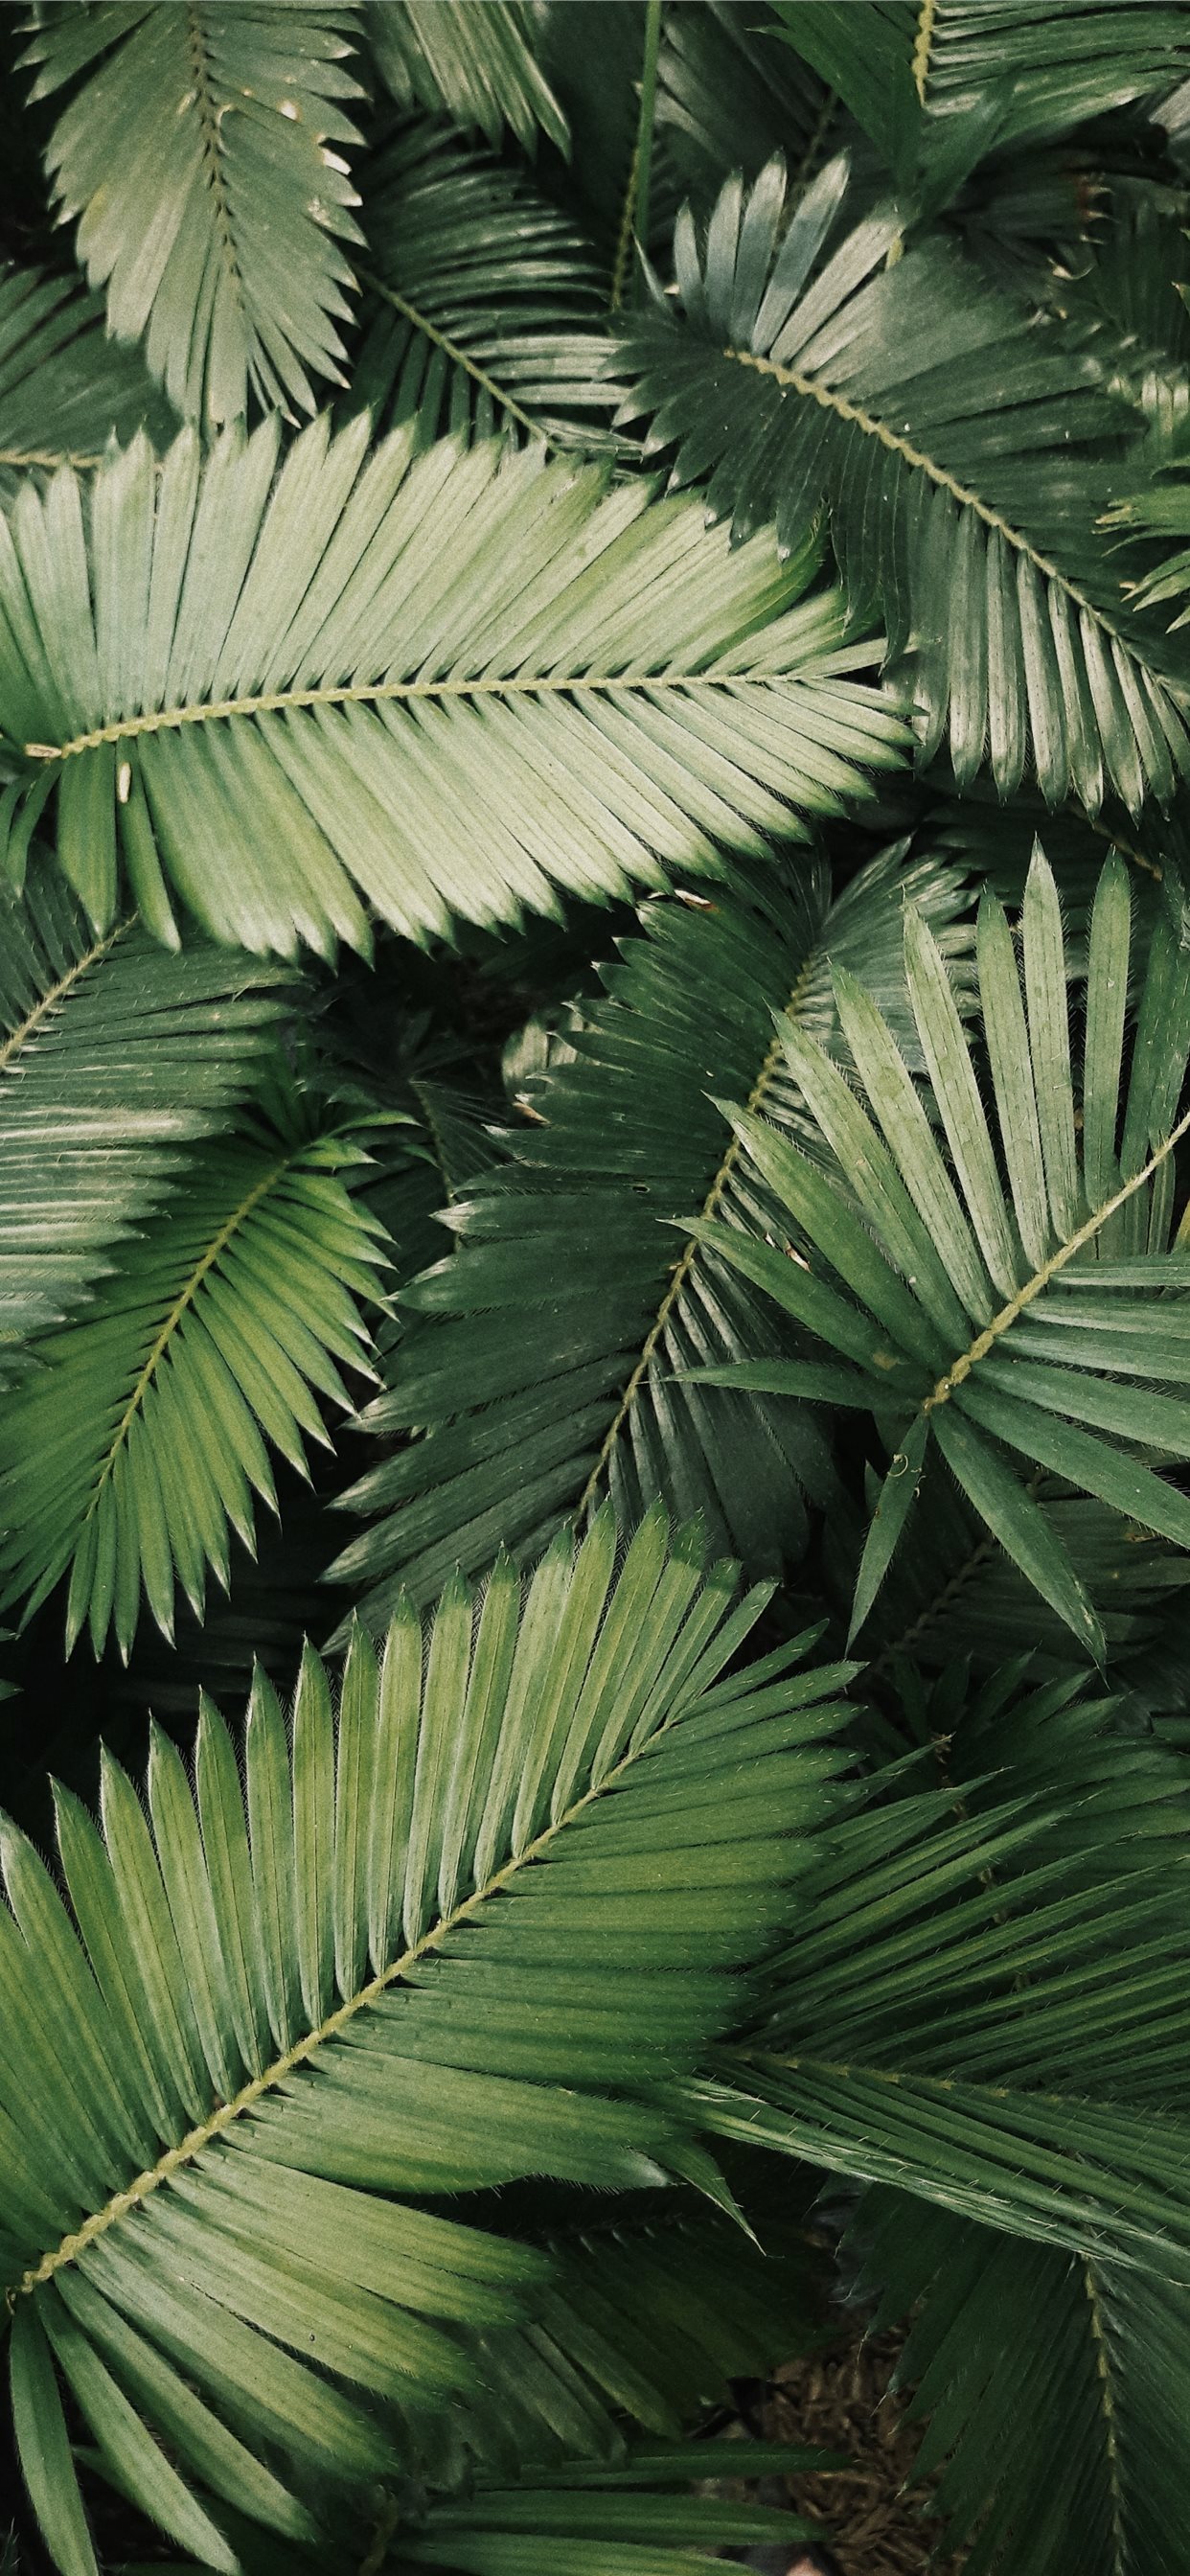 Lá dừa là biểu tượng của viễn cảnh nhiệt đới và sự nghỉ ngơi. Với màu xanh tươi mát, làm cho bất kỳ ảnh nào xuất hiện với lá dừa đều tràn đầy sức sống và năng lượng, đem lại một cảm giác tự do và thư giãn. Khám phá bức ảnh với lá dừa này để cảm nhận sự thư giãn và thoải mái!